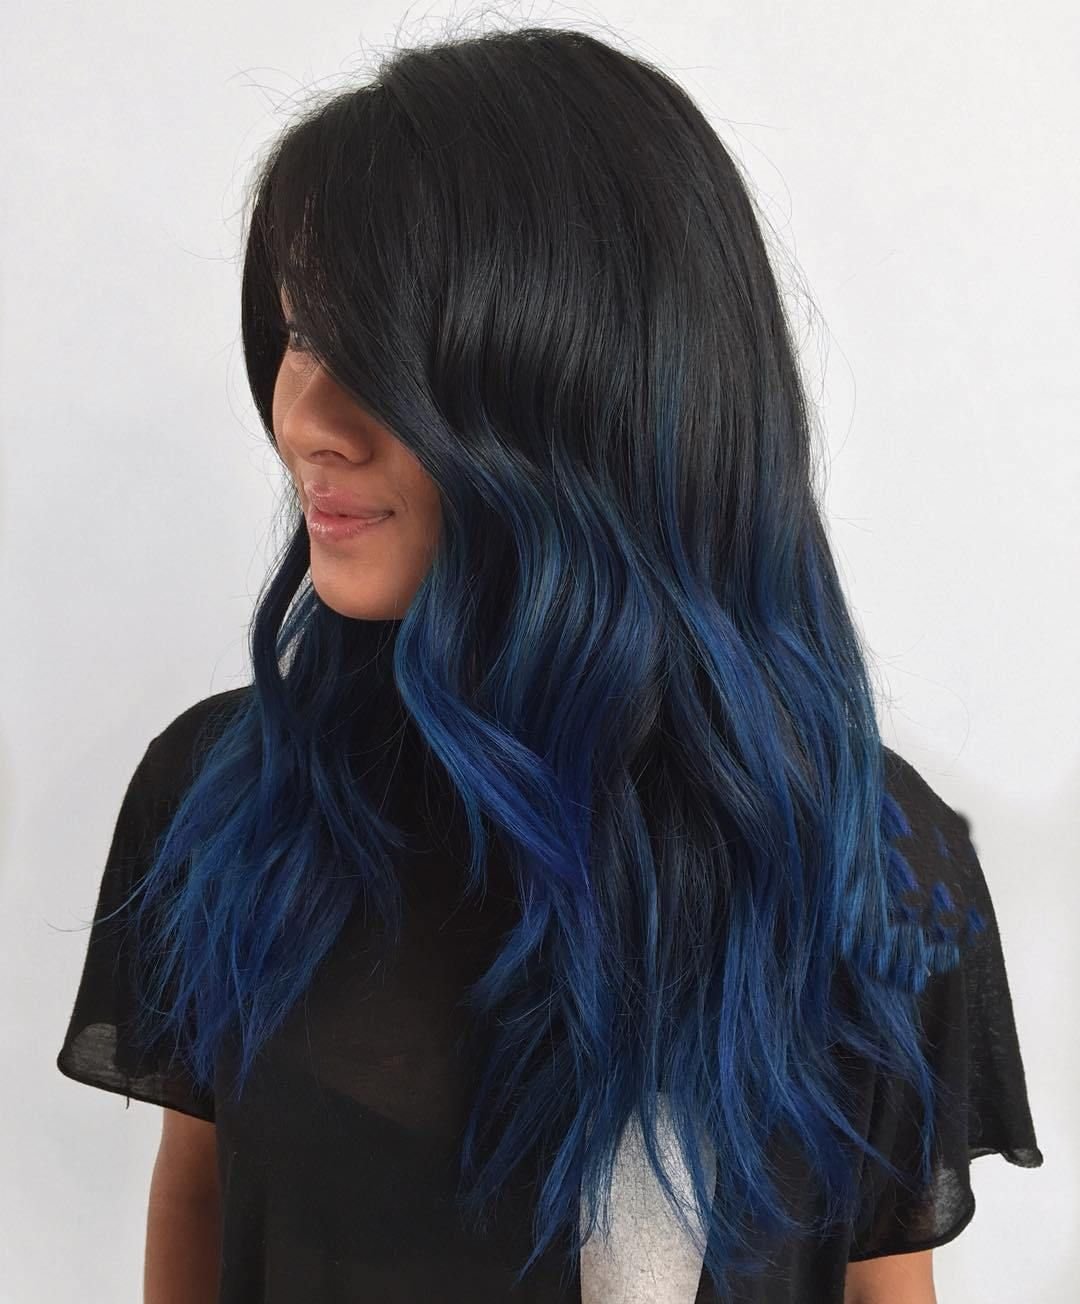 Синяя краска для волос на темные волосы 2019 год